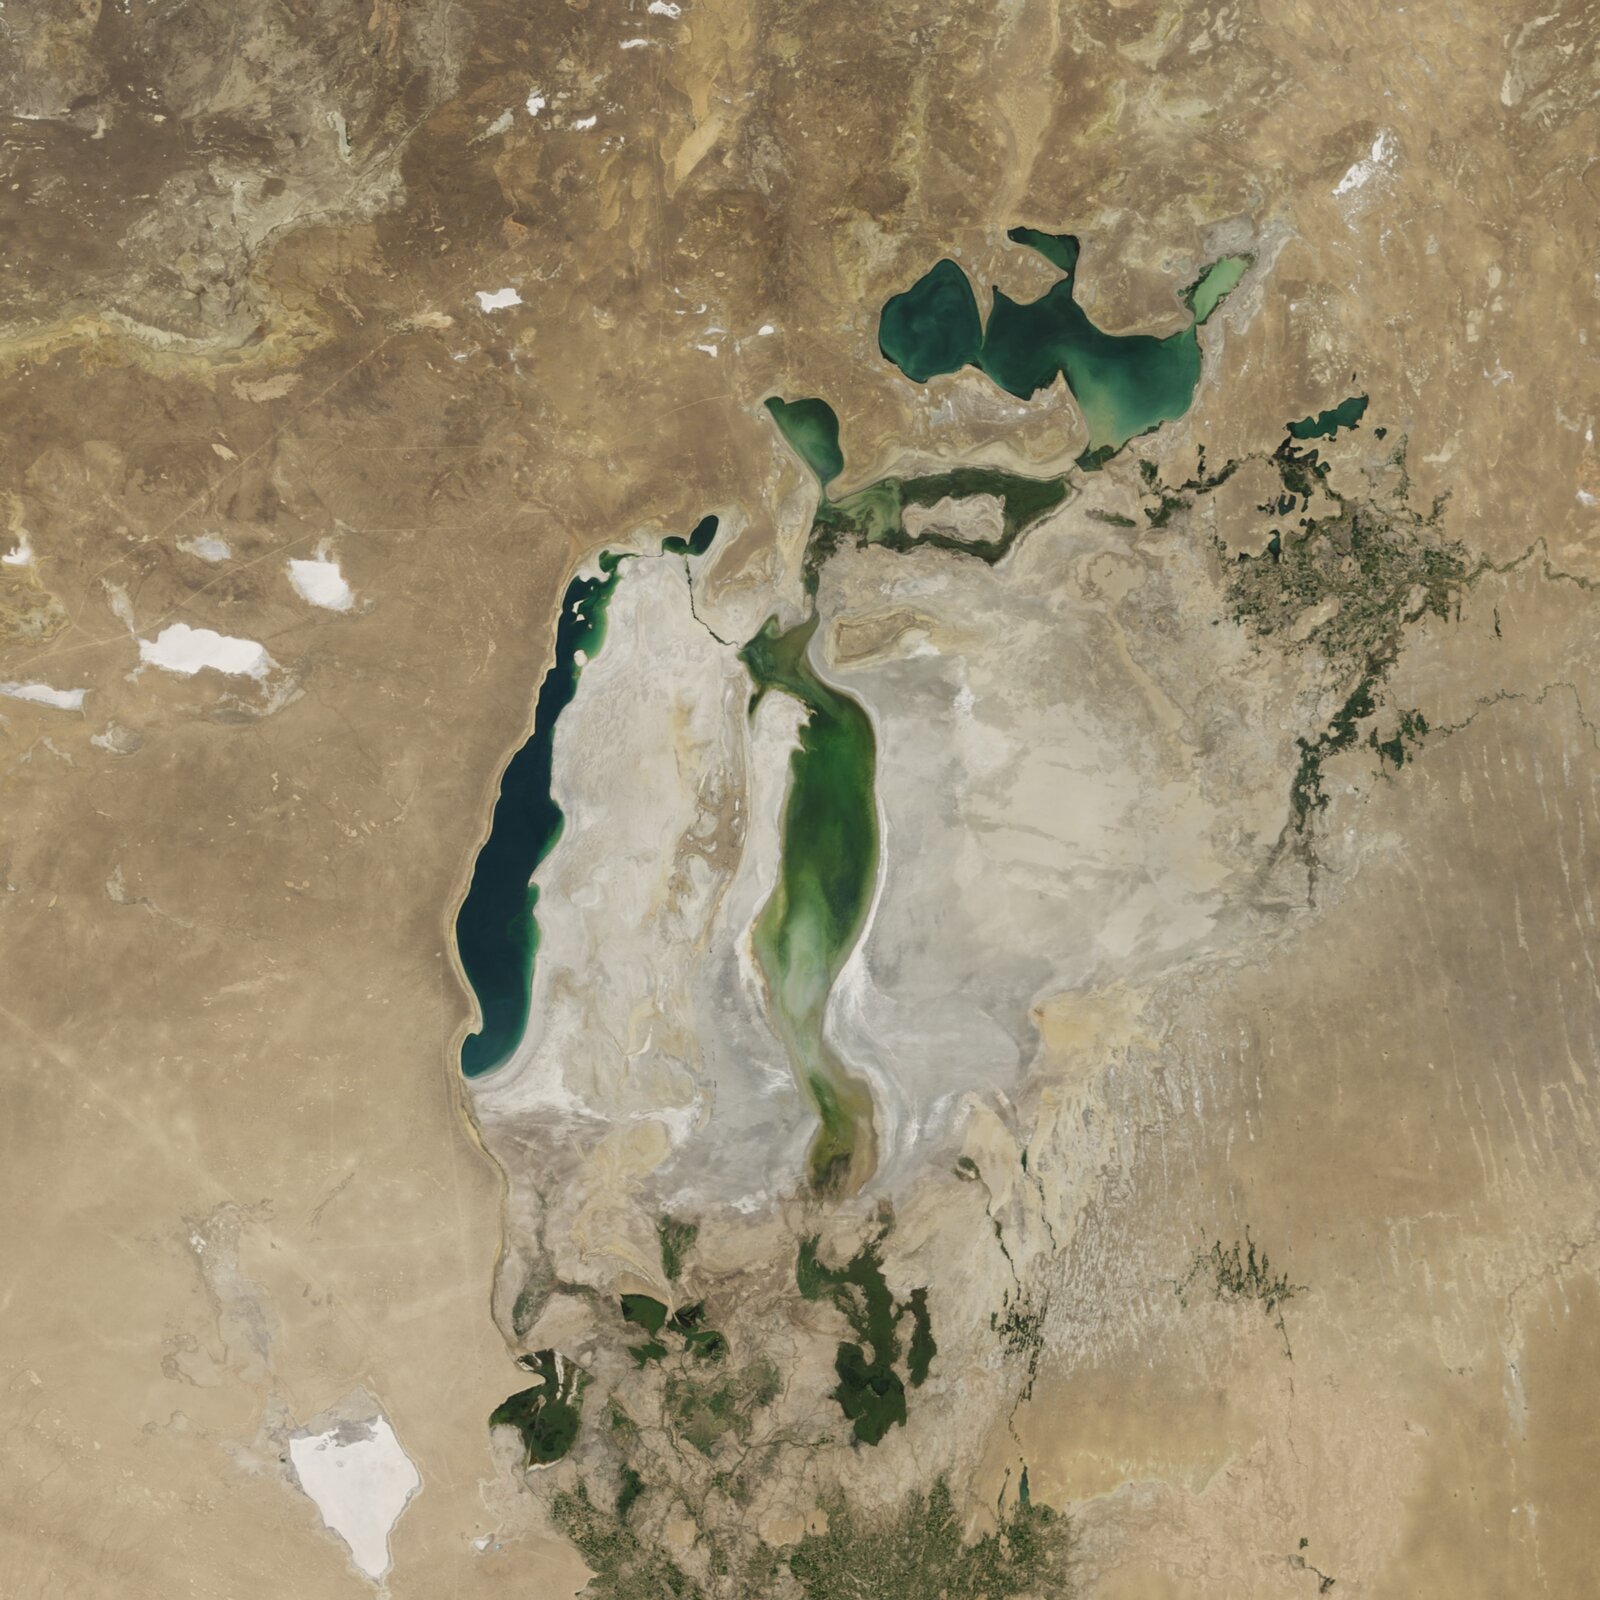 Zdjęcie przedstawia wodę wypełniającą jedynie wąski fragment po lewej stronie fotografii - woda ma kolor ciemnozielony oraz równolegle do niego, w niewielkiej odległości po prawej stronie. Woda znajduje się także w górnej części zdjęcia oraz w dolnej w niewielkiej ilości. Ma kolor zielony. Pozostała część obszaru jest biała, jasnobrązowa, bez śladów wody.    